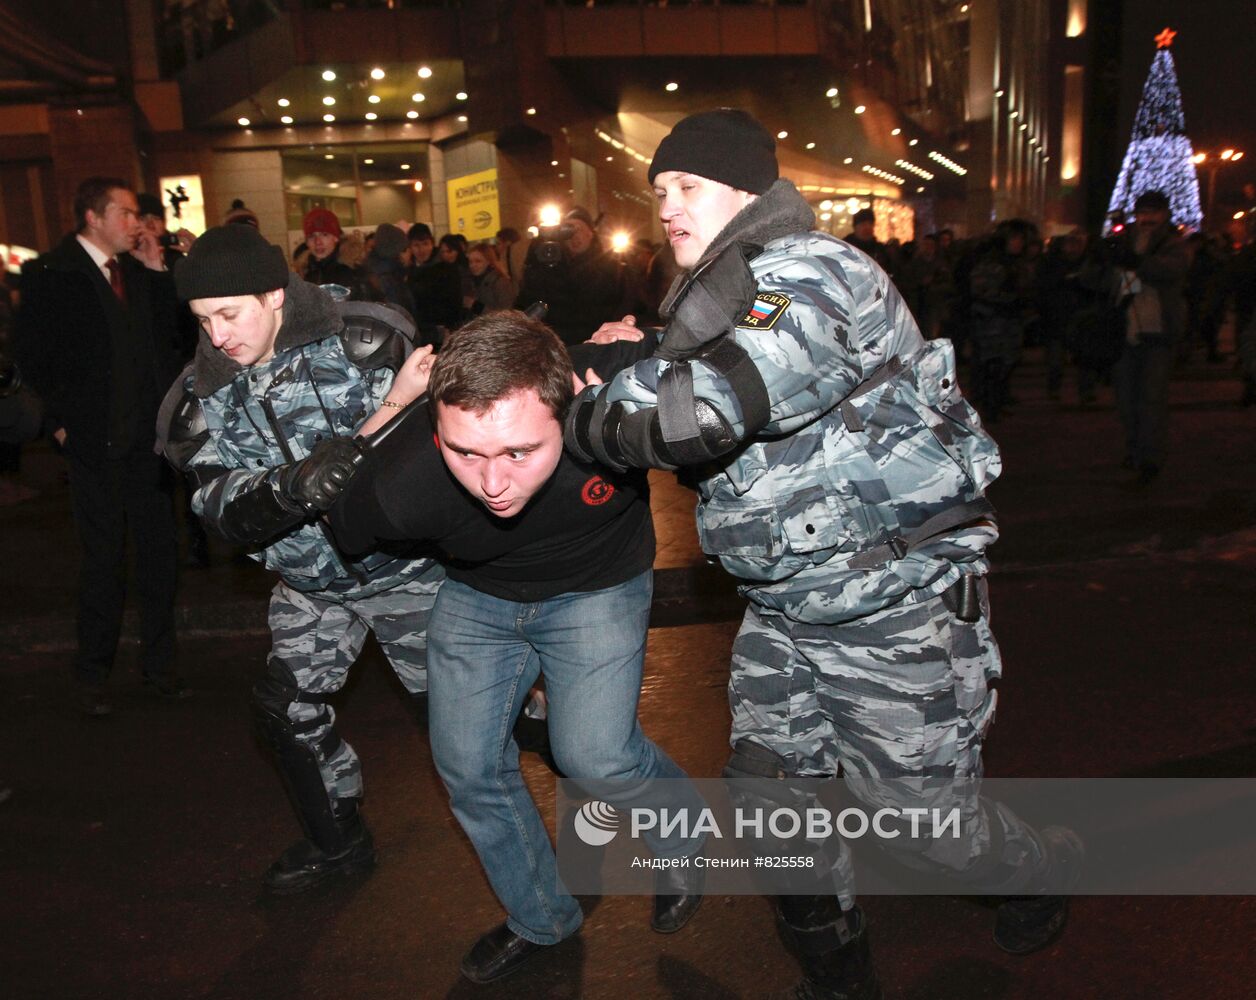 Ситуация на площади Киевского вокзала в Москве